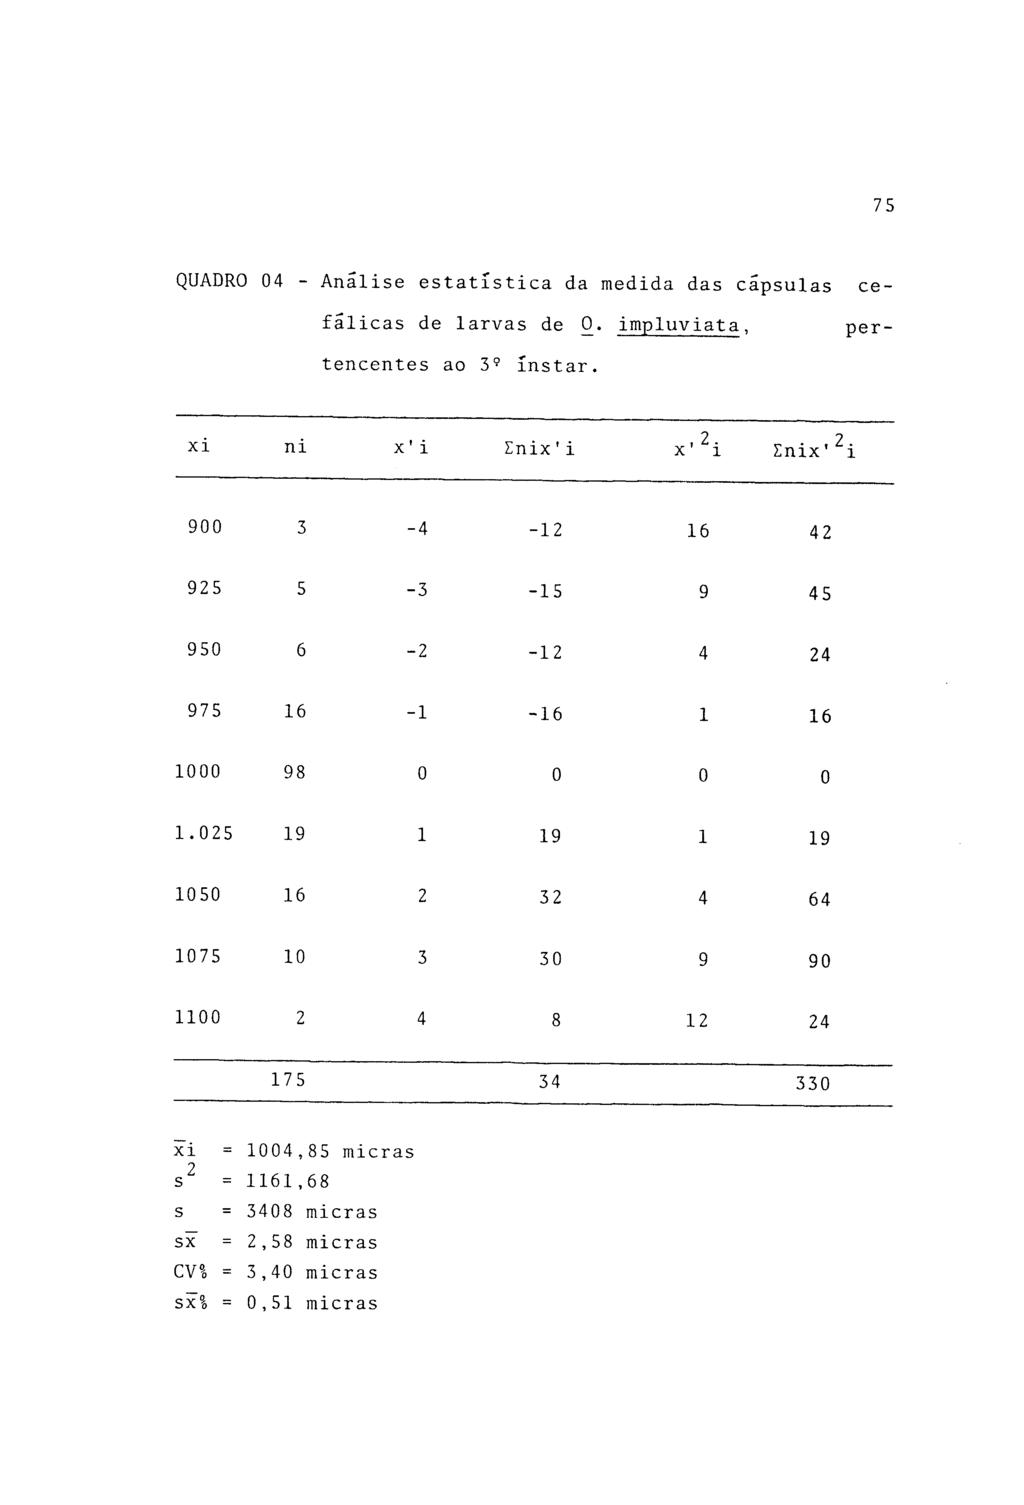 75 QUADRO 04 - Analise estatística da medida das cápsulas cefálicas de larvas de 0. impluviata, pertencentes ao 3? instar. xi ni x' i Enix'i,2.